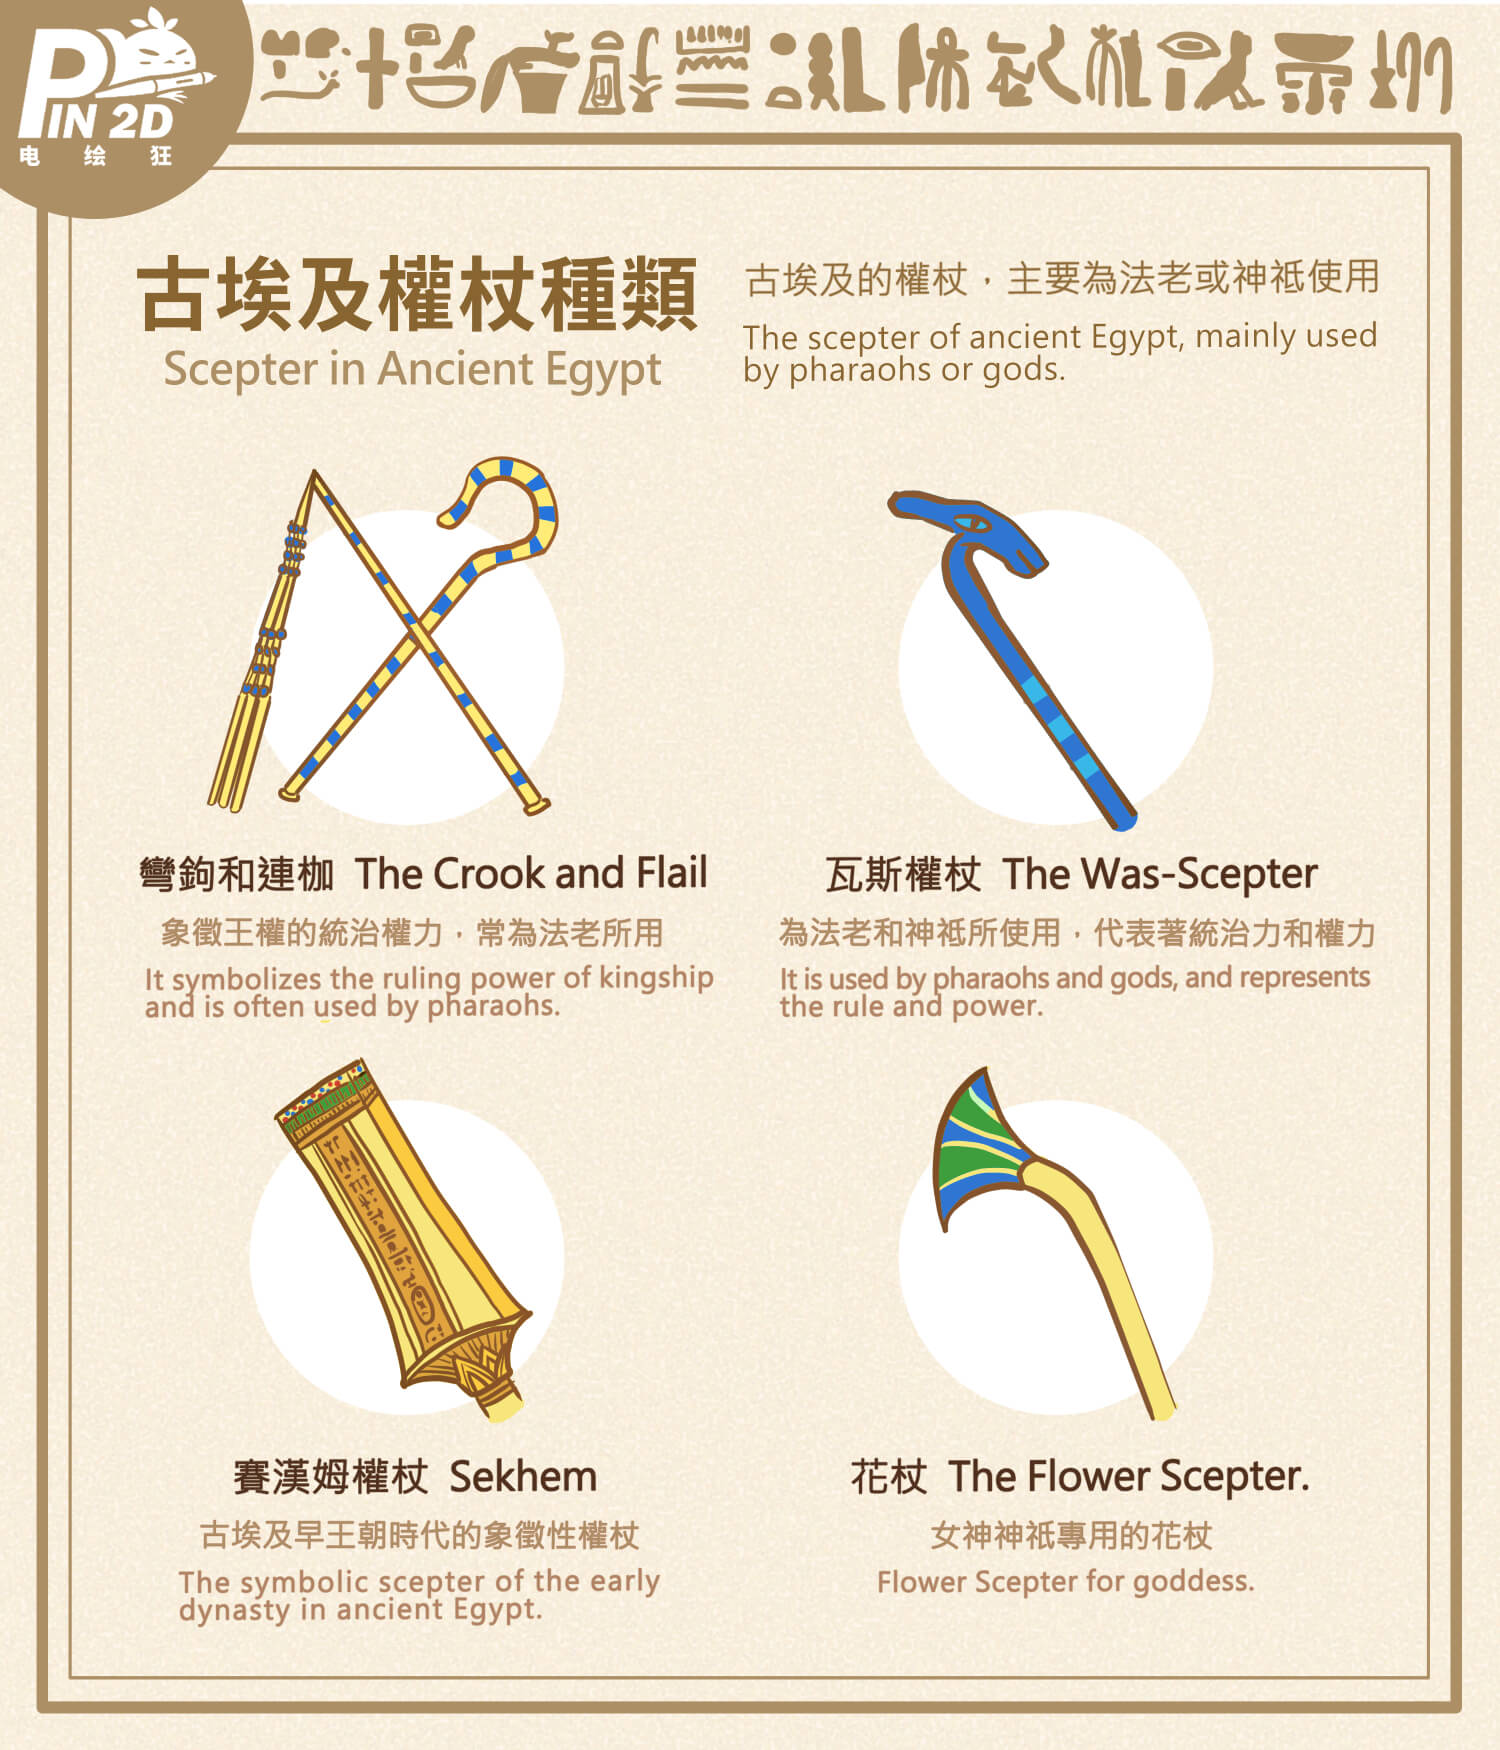 古埃及权杖种类:弯钩和连枷,瓦斯权杖,赛汉姆权杖,花杖